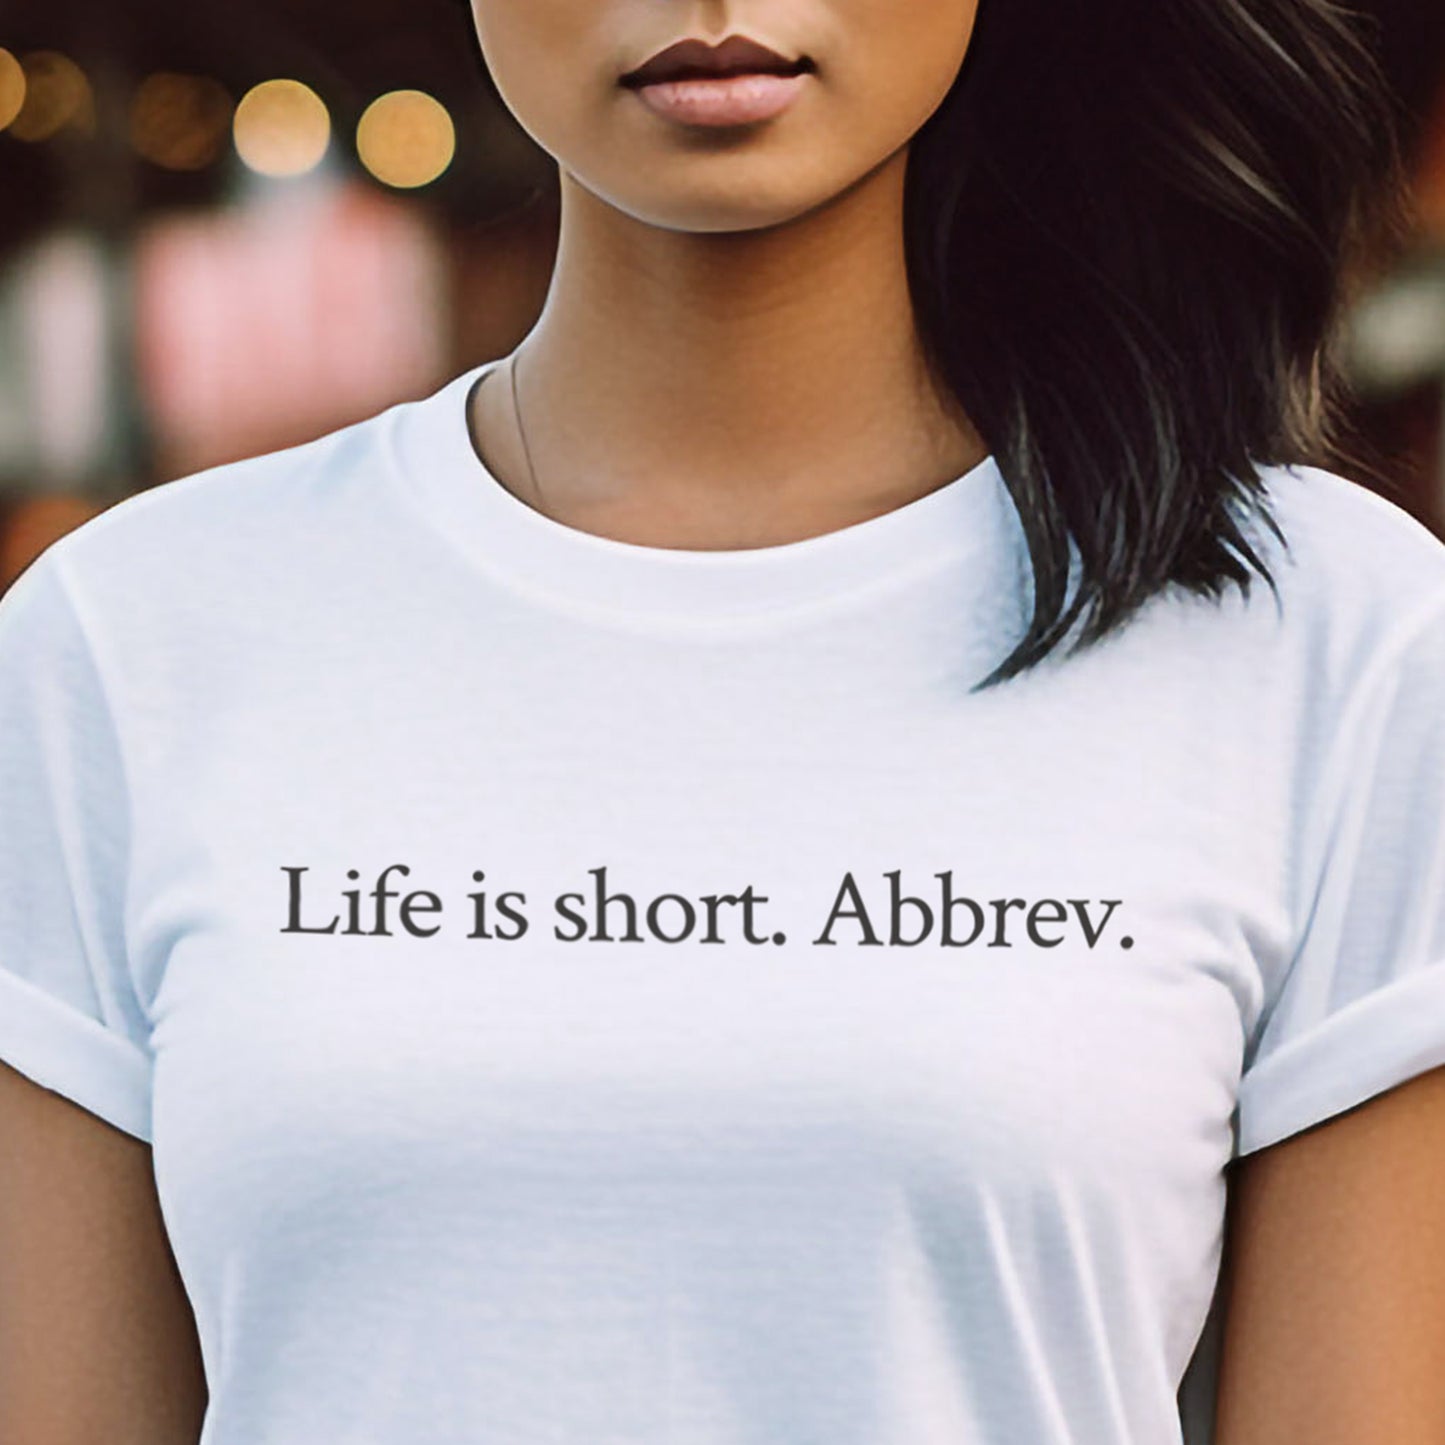 Life is short. Abbrev.